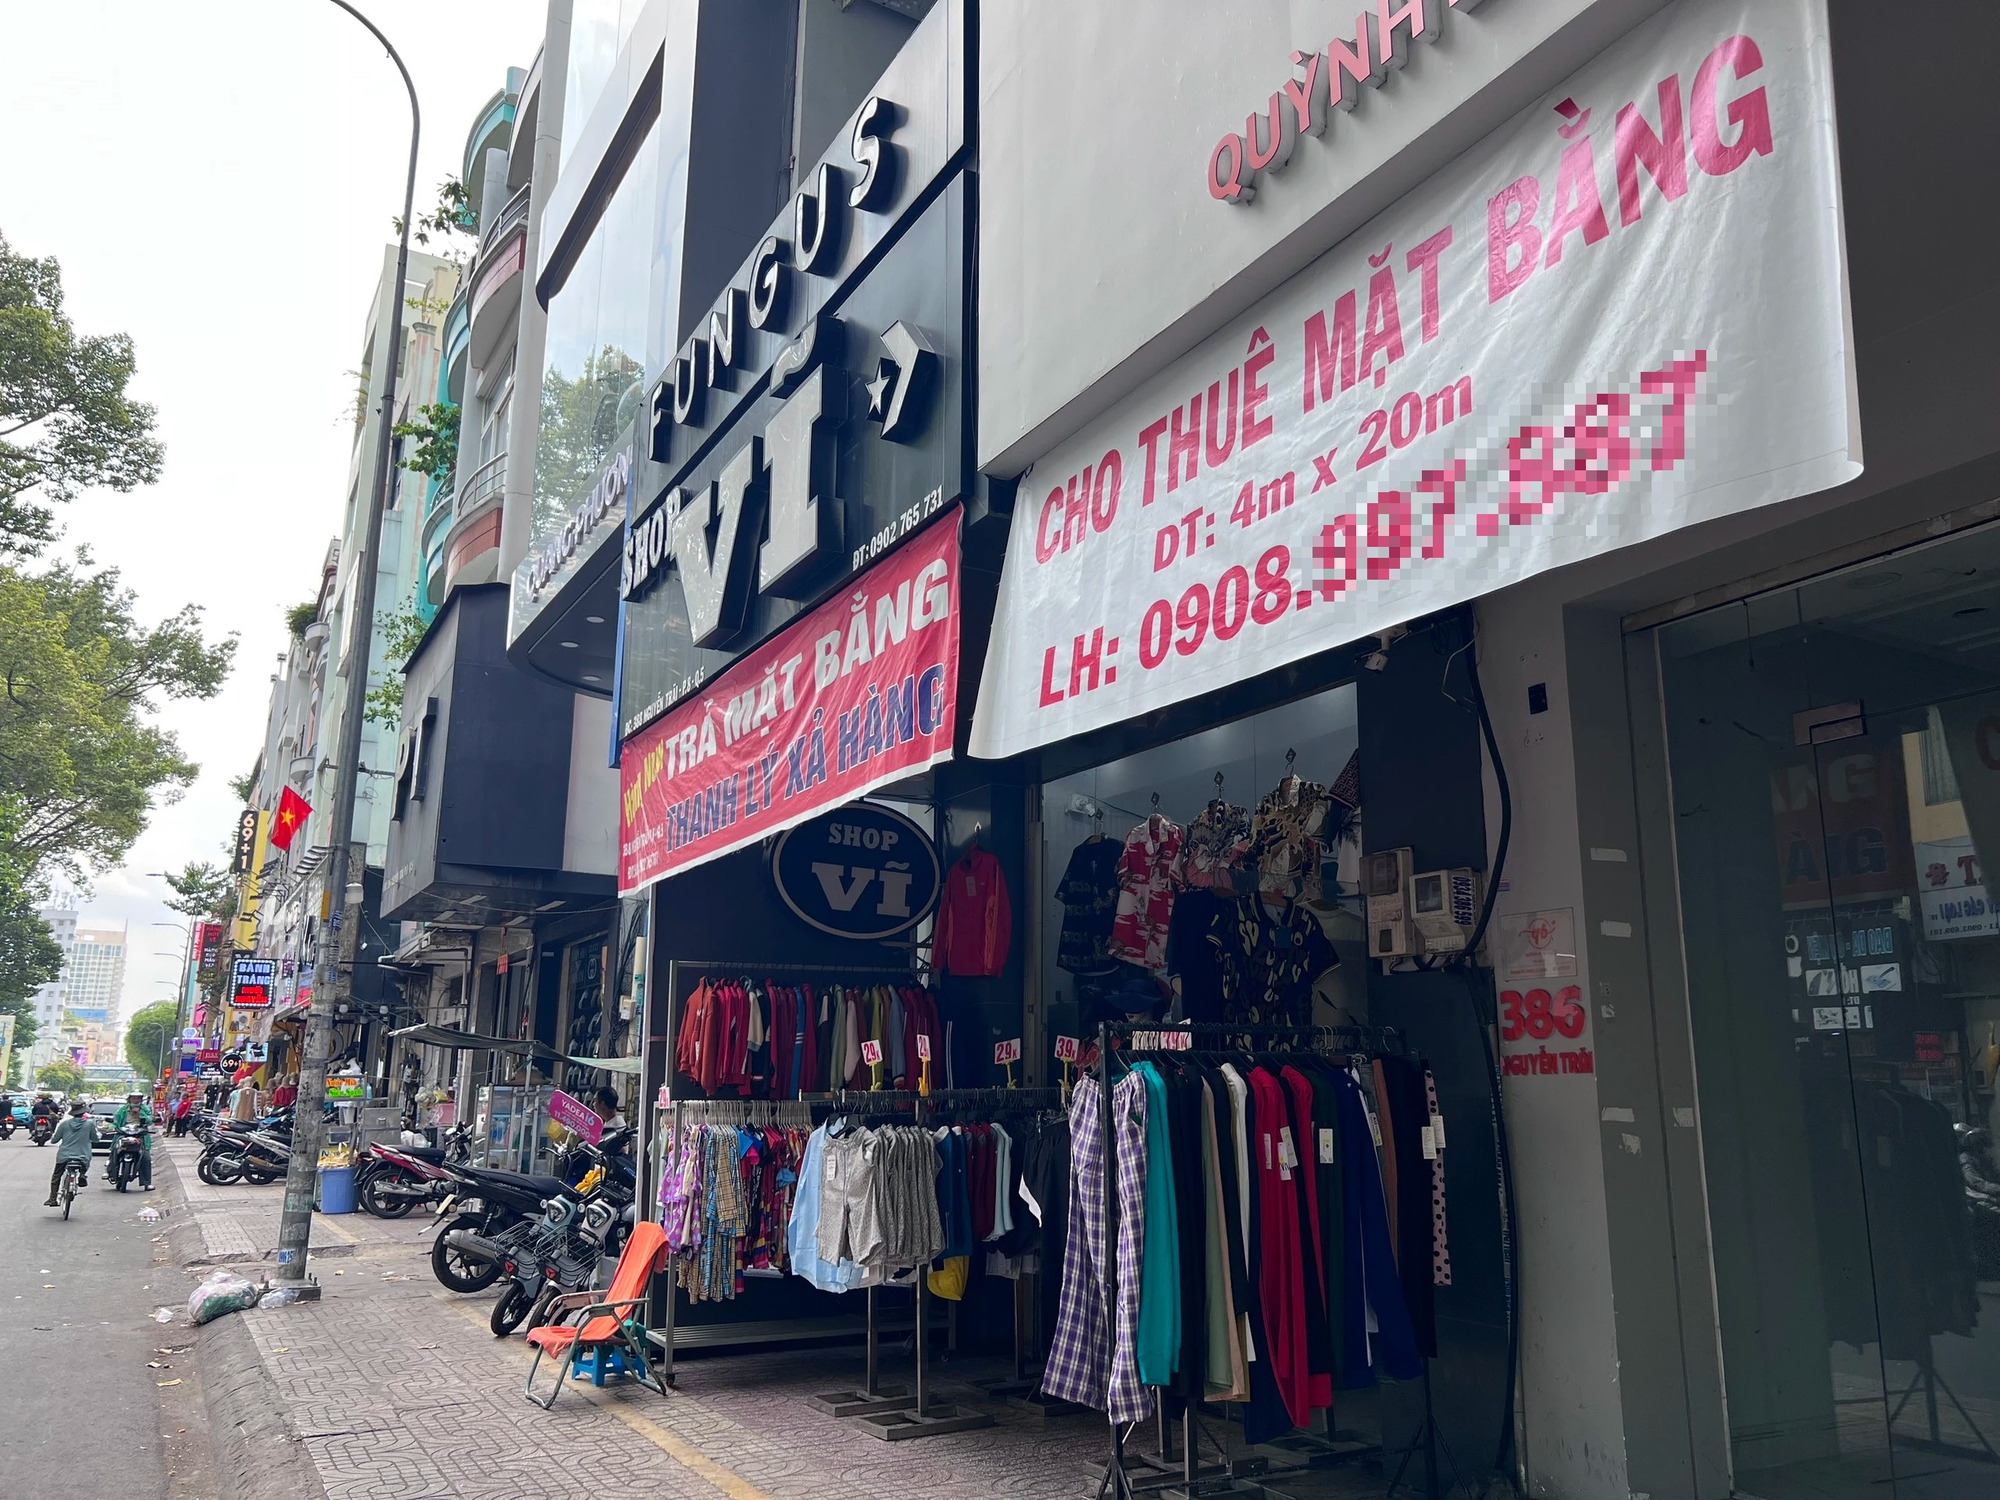 Tại phố thời trang Nguyễn Trãi, bên cạnh một cửa hàng đã dán bảng cho thuê là shop thời trang đang thanh lý để chuẩn bị trả mặt bằng